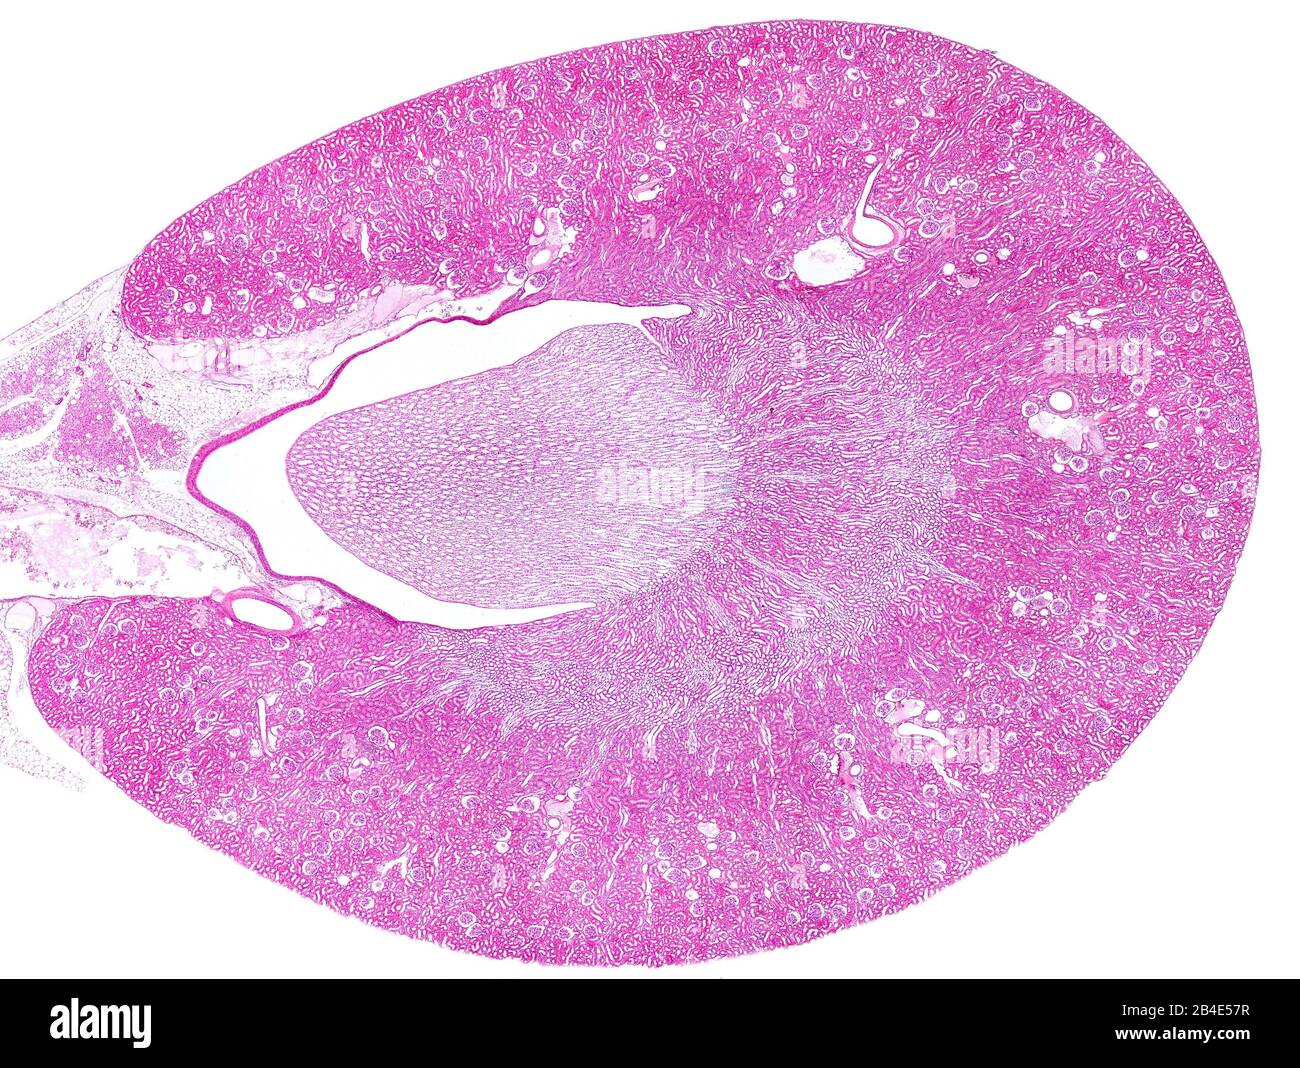 Leichter Mikrographen-Querschnitt der Rattenniere, der mit Hämatoxylin und Eosin befleckt wurde und die periphere Nierenrinde (mit vielen Glomeruli) und in t anzeigt Stockfoto